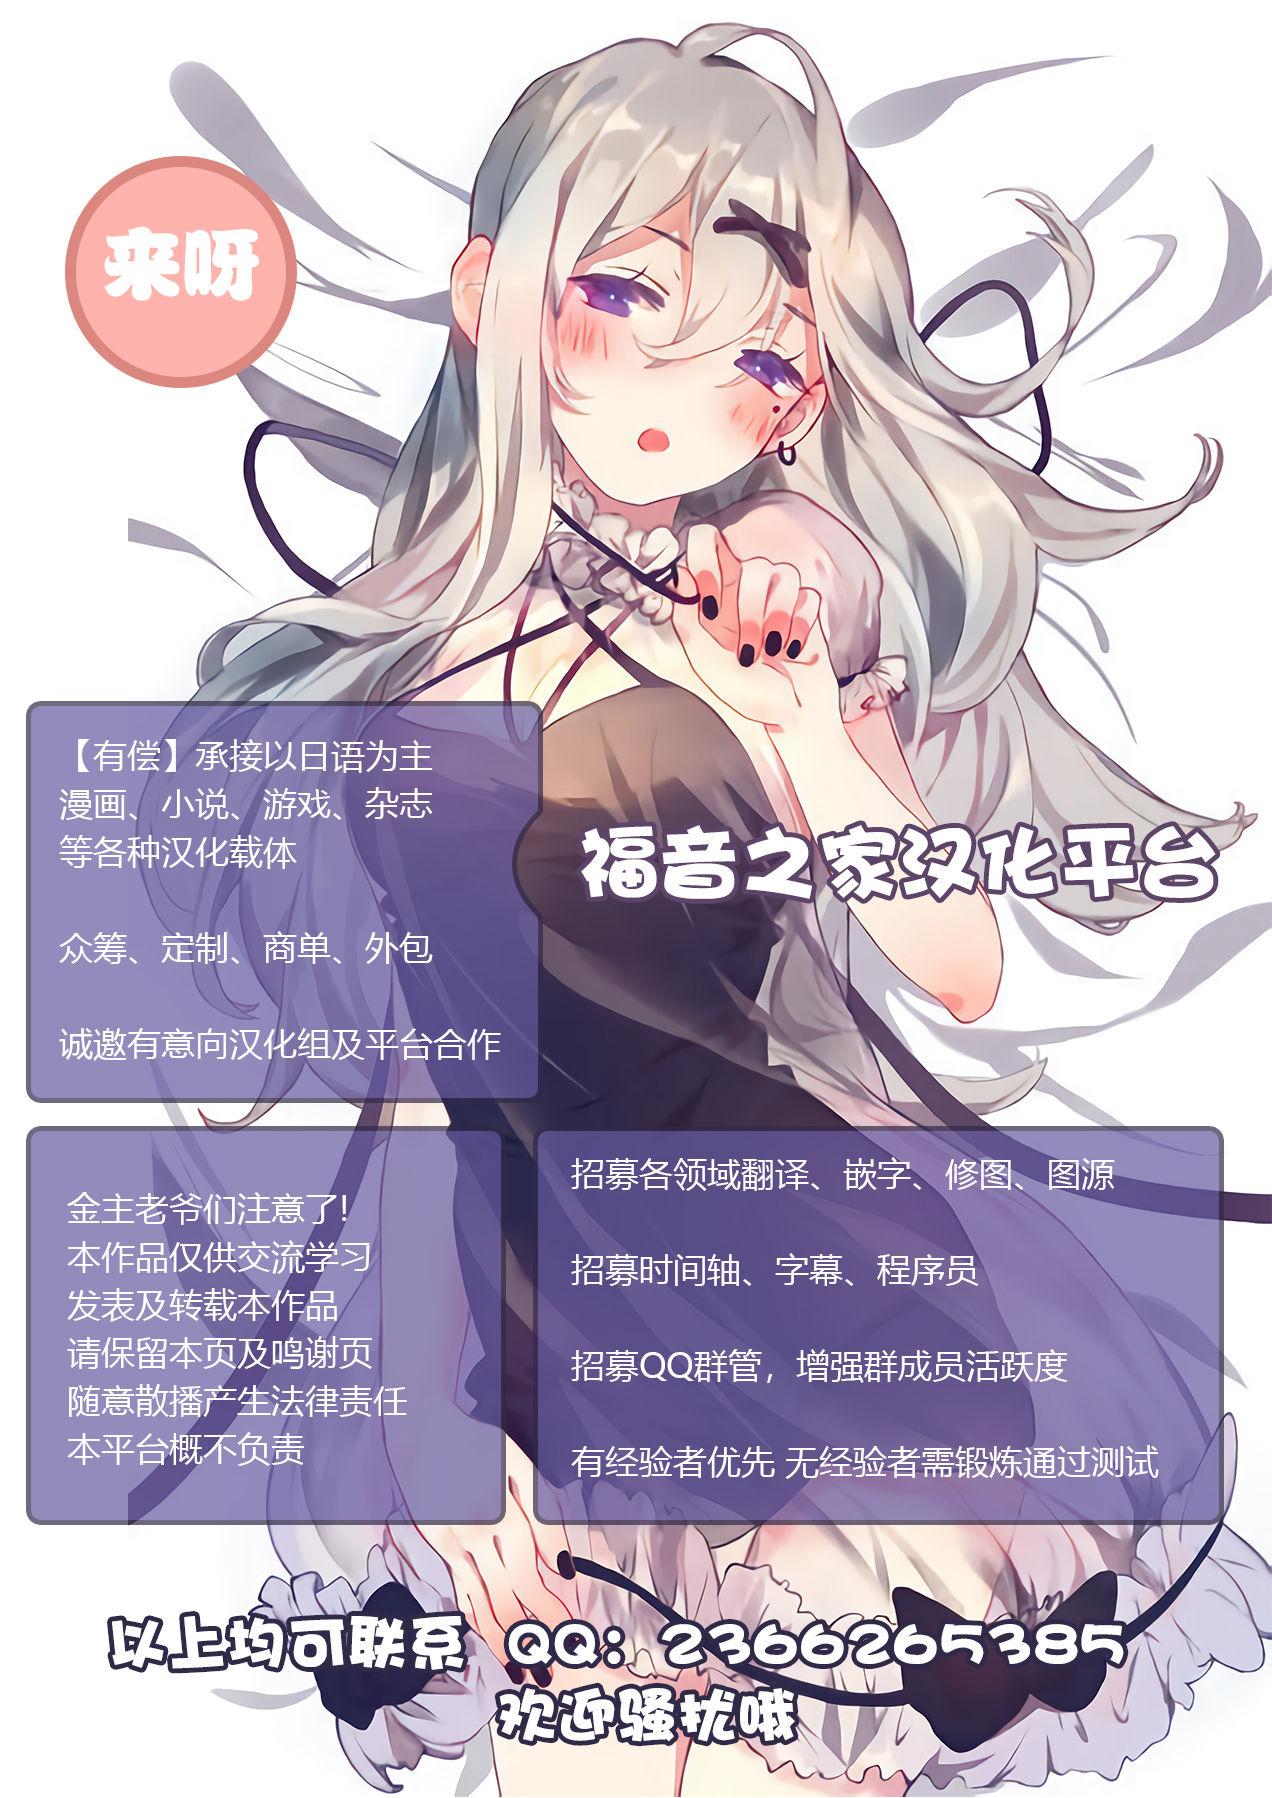 堕とされた槍華 [Anthology] Kukkoro Heroines Vol. 5[Chinese]【不可视汉化】 22